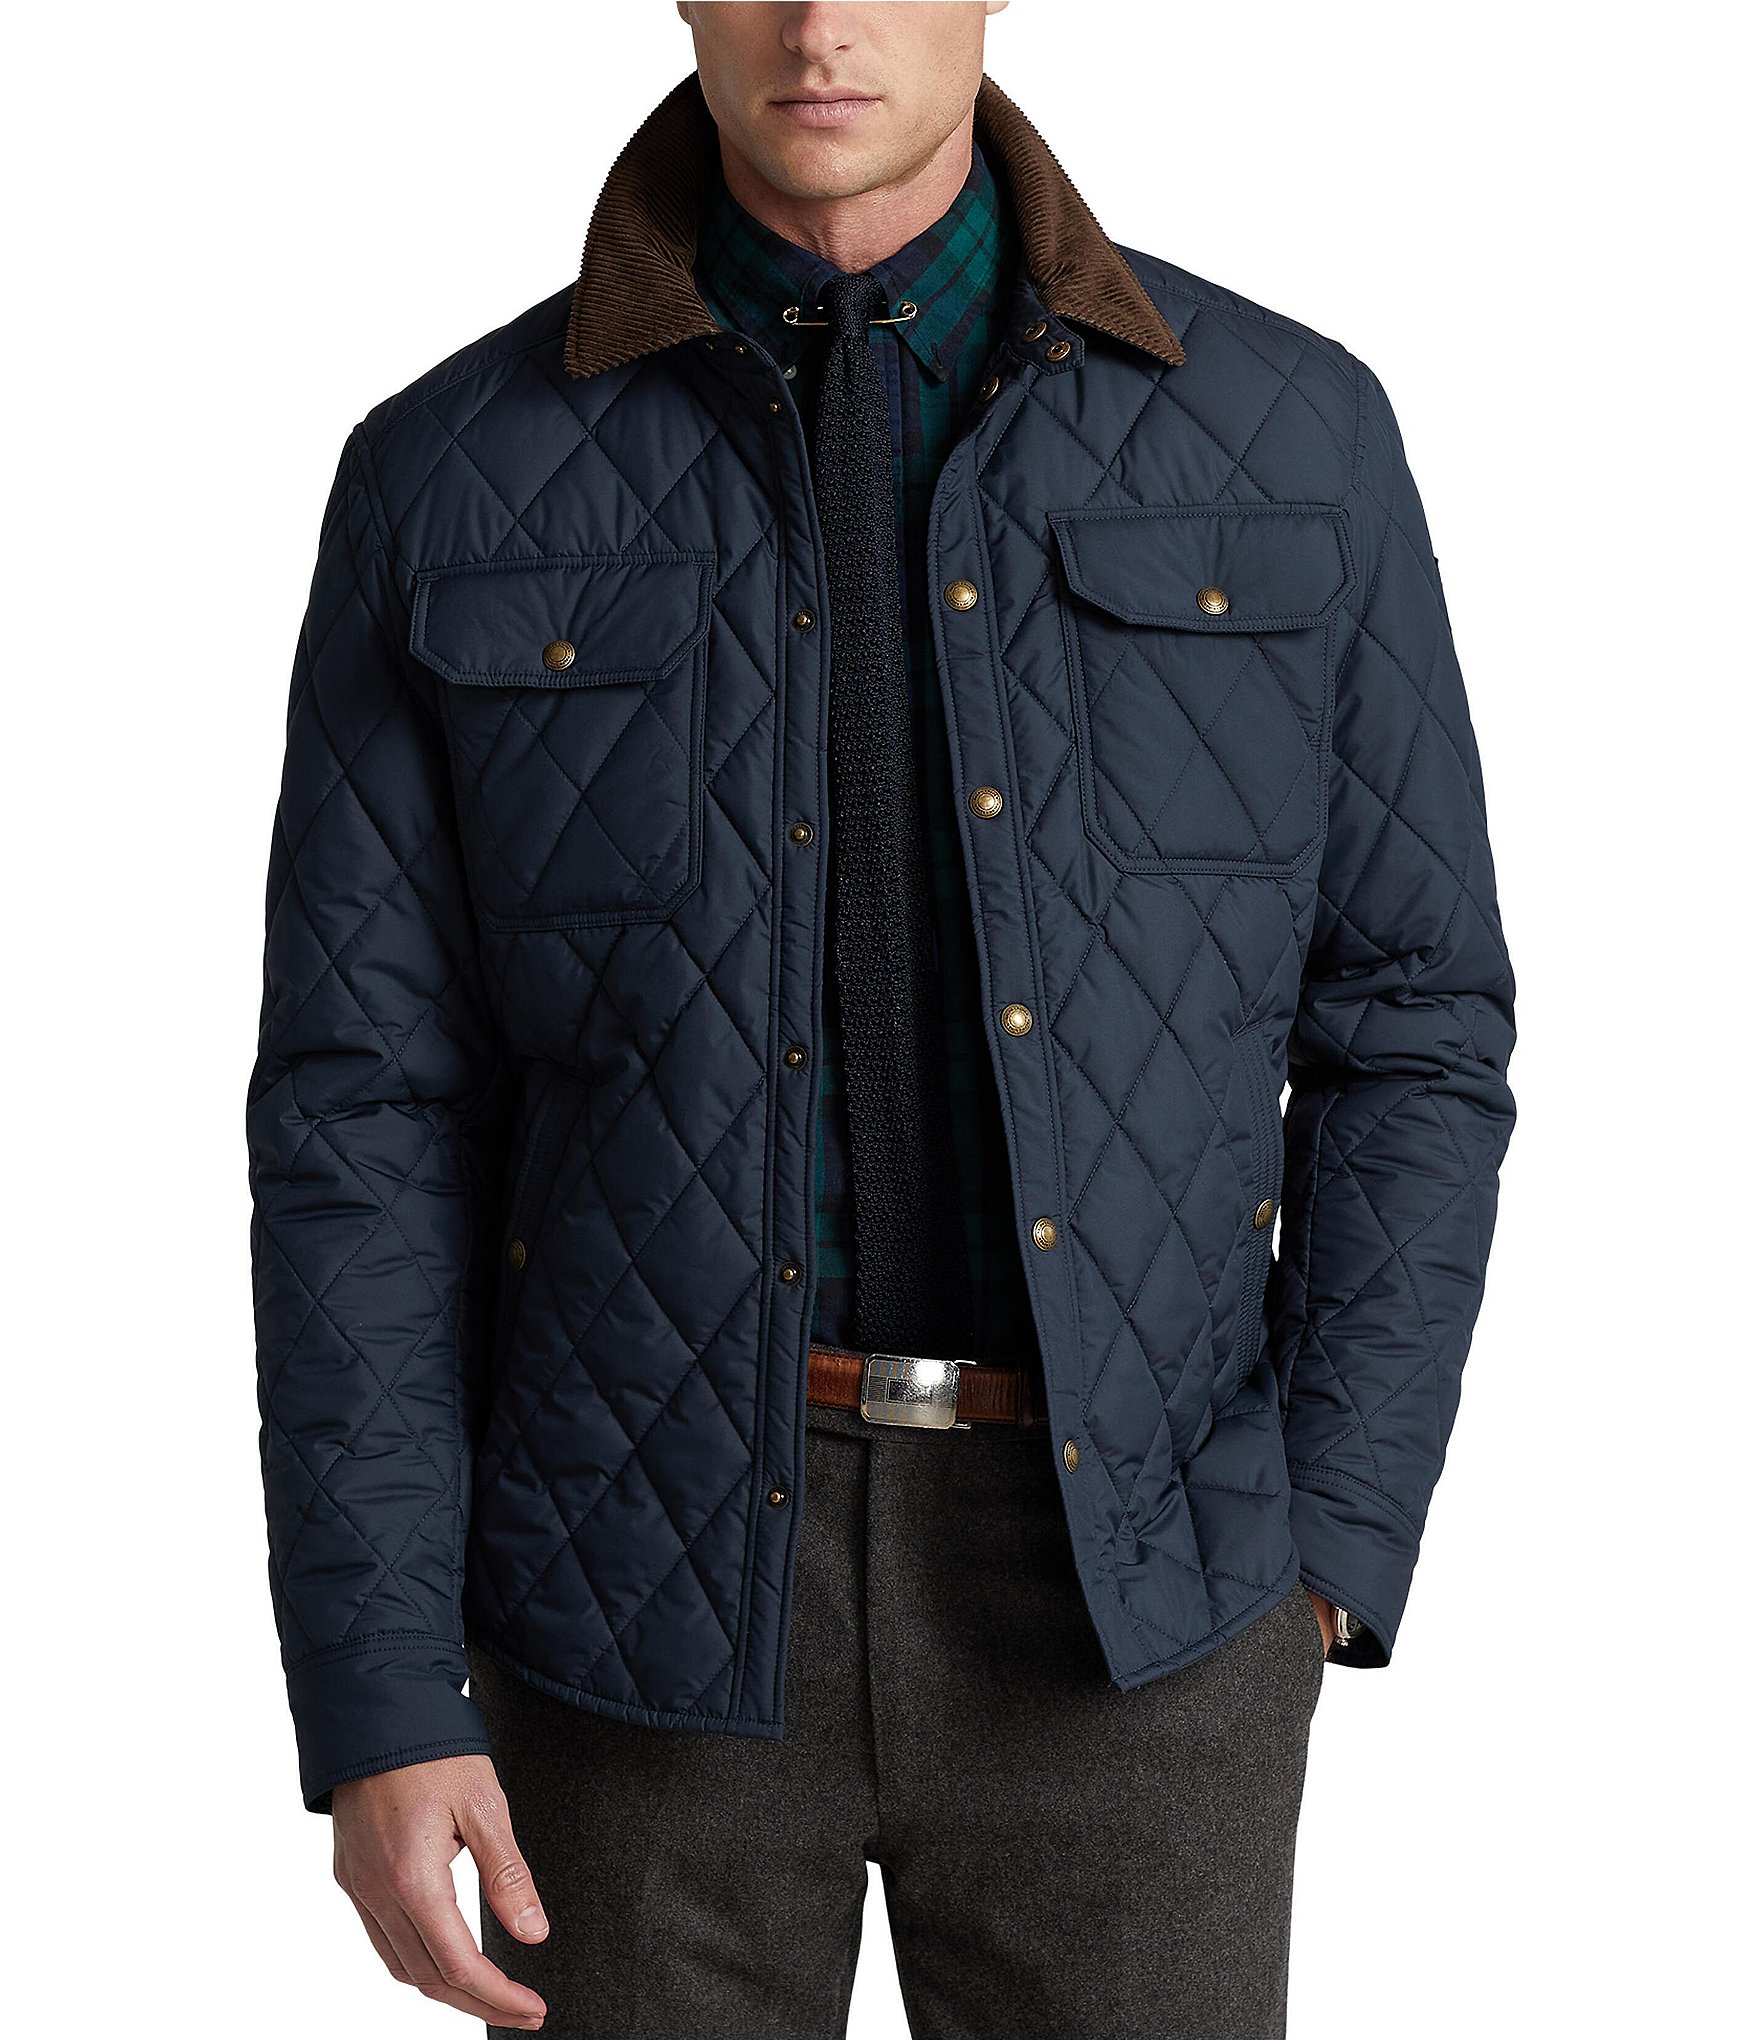 Ralph Lauren jacket.-